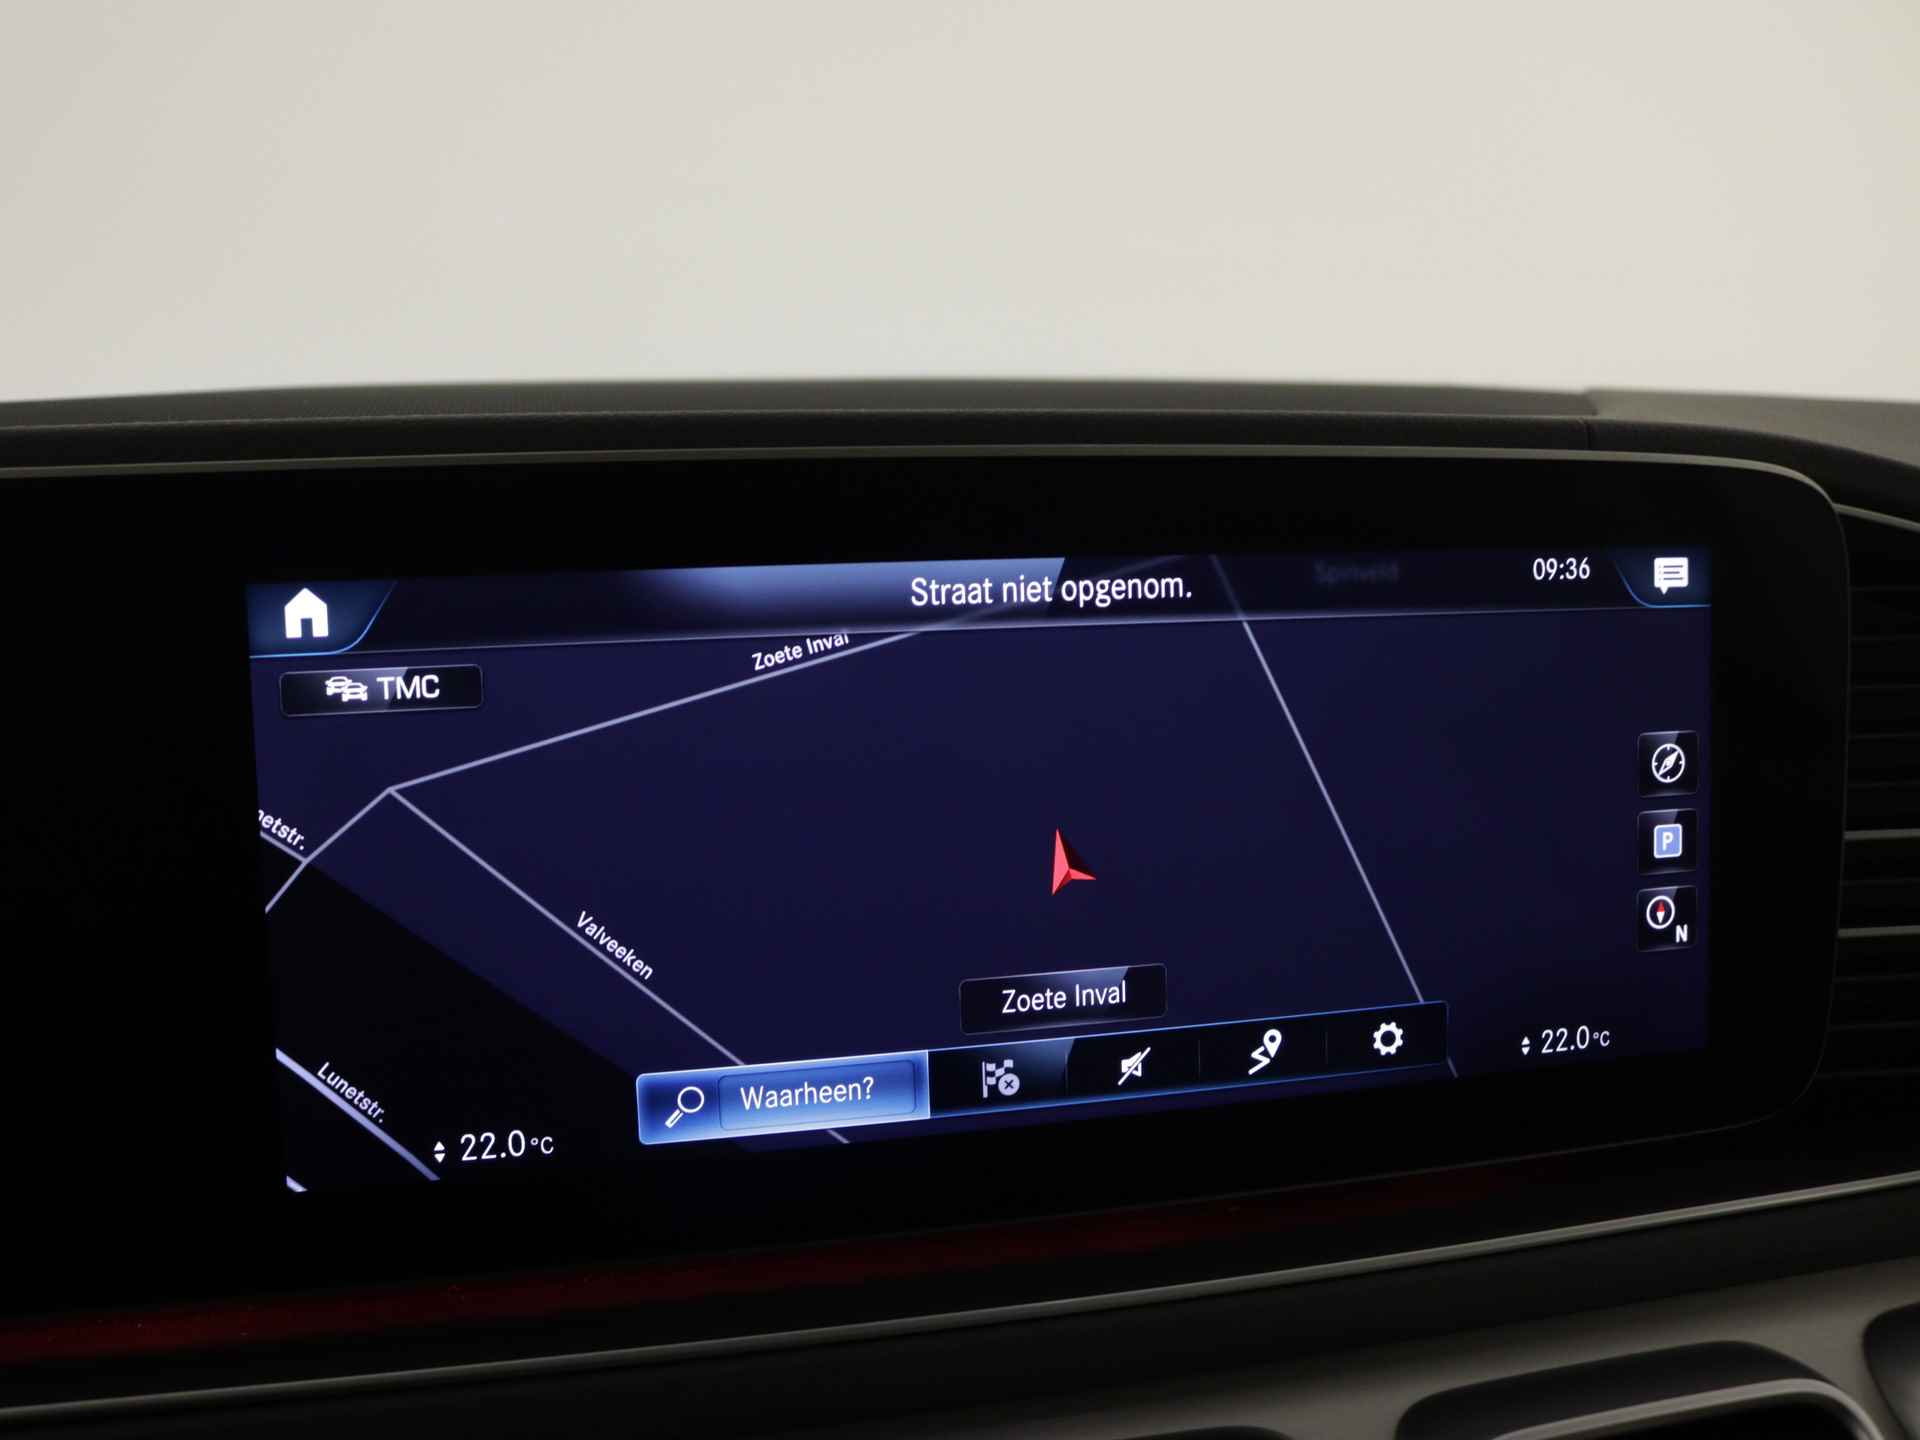 Mercedes-Benz GLE 450 4MATIC AMG Line Premium | Panoramadak | Luchtvering | Burmester | Navigatie | MBUX wide screen | Alarm klasse 3 | Parking support | inclusief 24 maanden MB Certified garantie voor europa - 8/39